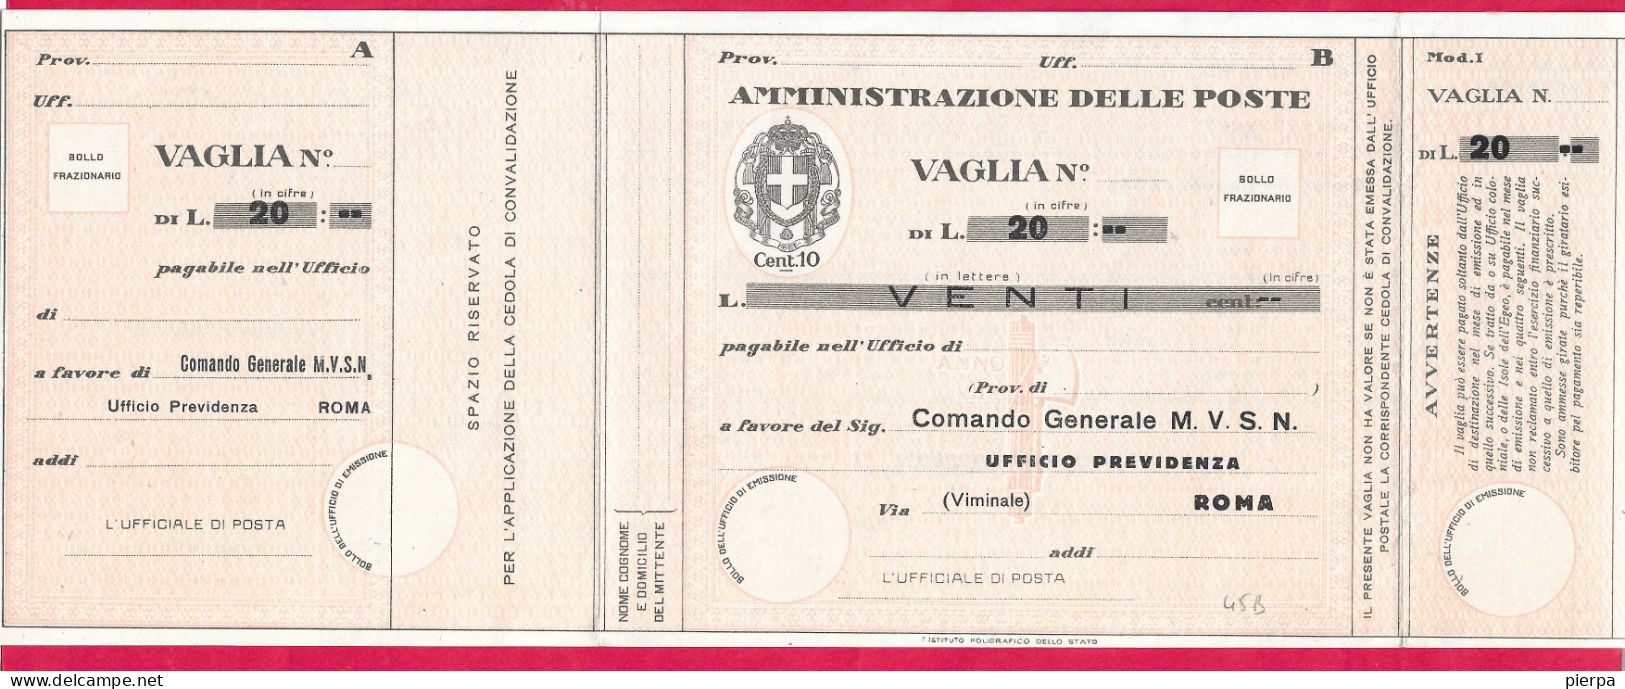 MODULO VAGLIA POSTALE C.10 (CAT. INT. 45/B) PRECOMPILATO M.V.S.N. LIRE 20 - NON VIAGGIATO - Taxe Pour Mandats